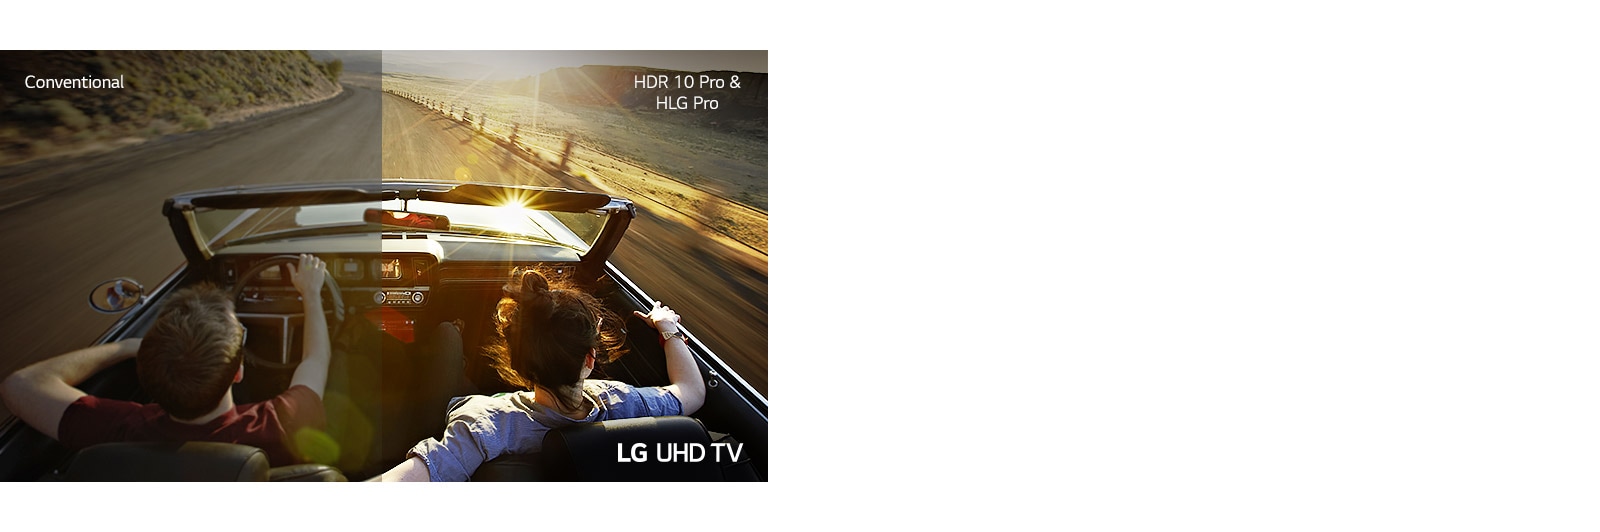 Un couple dans une voiture roulant sur une route. La moitié est affichée sur un écran conventionnel avec une qualité d'image médiocre. L'autre moitié est présentée avec une qualité d'image TV LG UHD nette et éclatante.